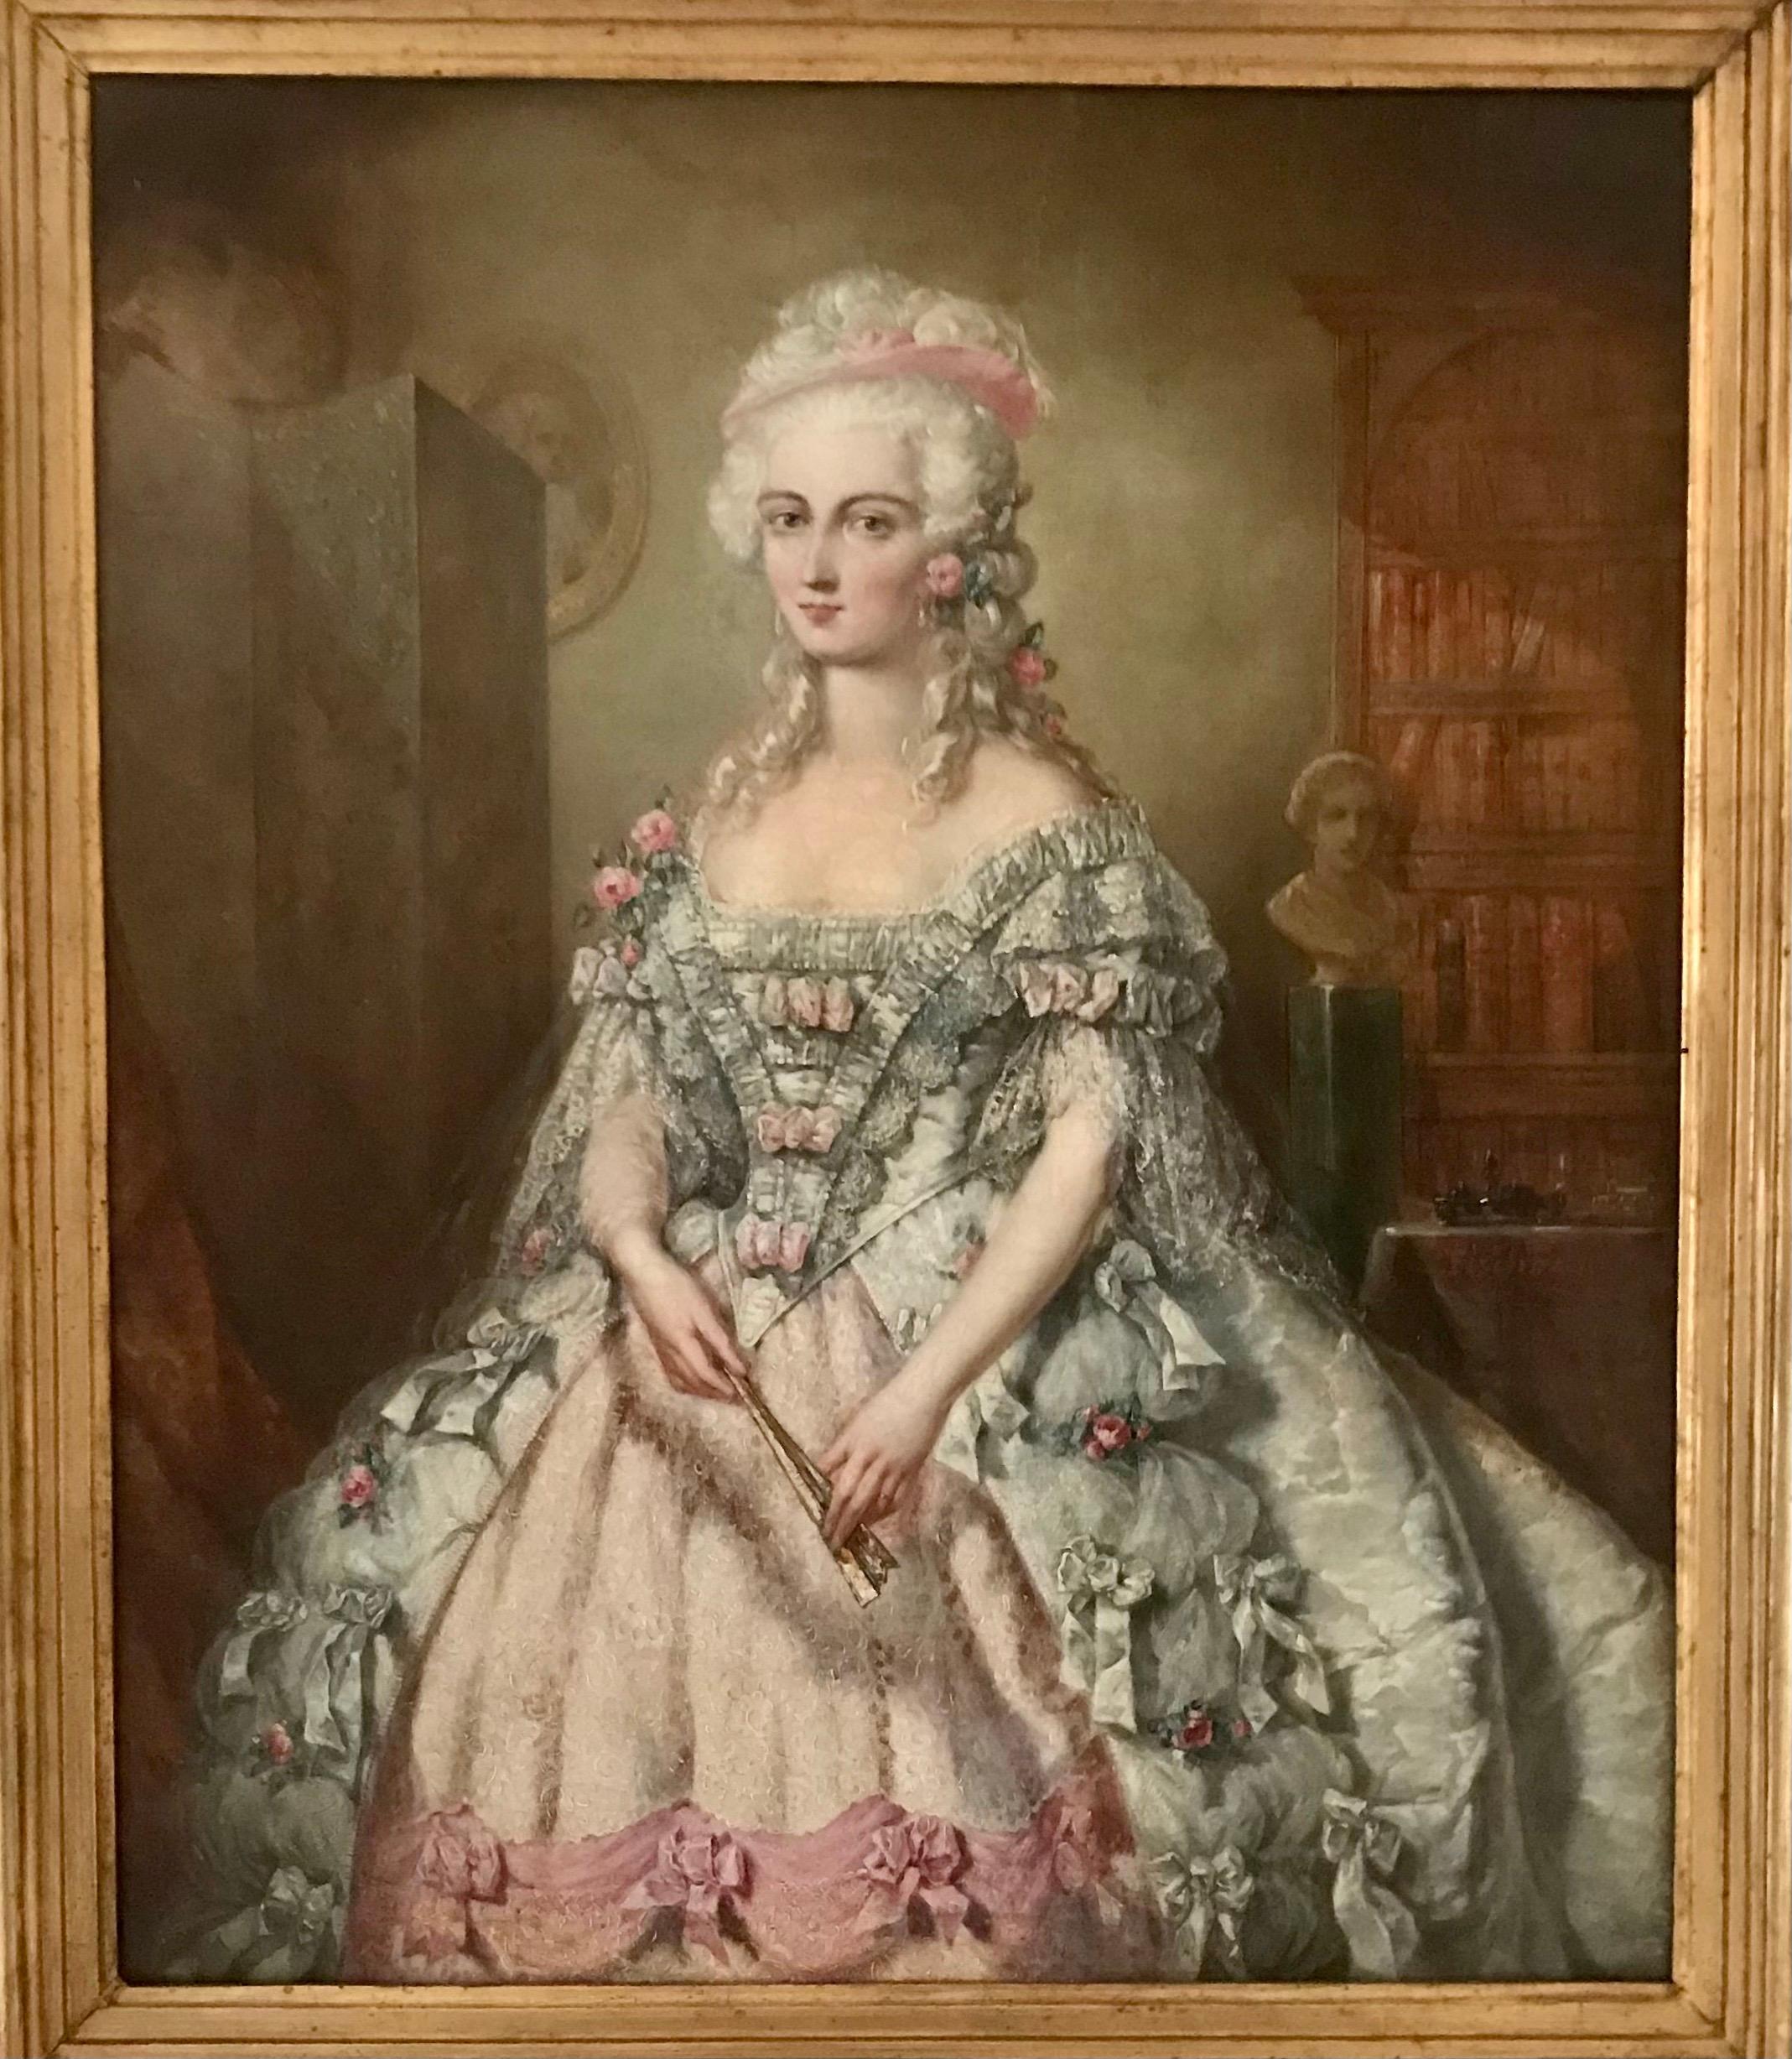 Portrait en studio d'une aristocrate, en pied, vêtue d'une robe crème et rose bordée de dentelle, tenant un éventail plié à la main.
Allemand, milieu du XVIIIe siècle.

Notes : Johann Heinrich Tischbein l'Ancien, dit le Calle, (3 octobre 1722 à